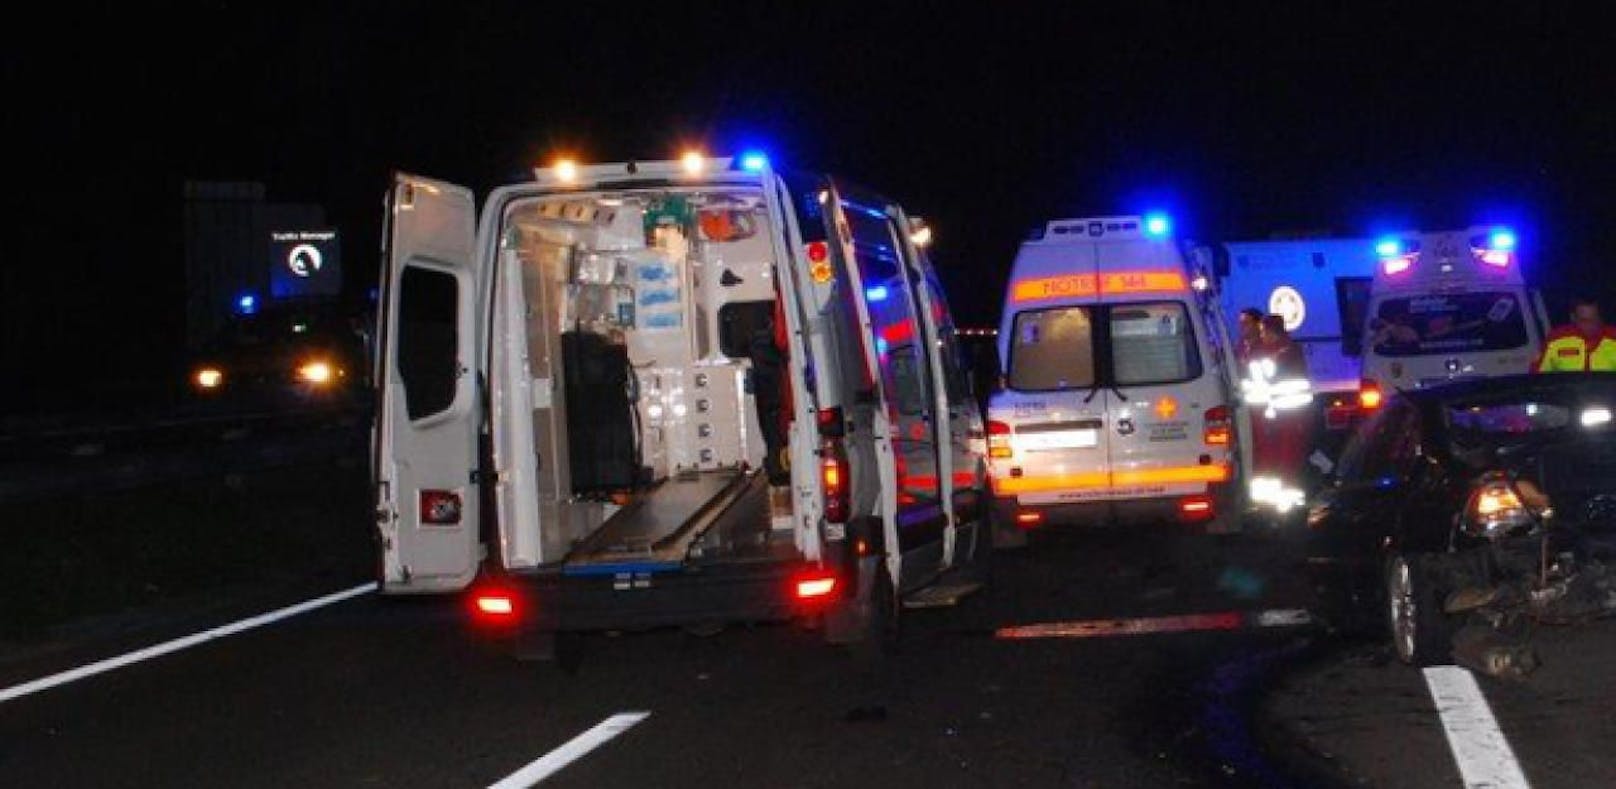 Symbolfoto: In der Nacht auf Montag kam es auf der A1 zu einem schweren Unfall mit sieben Verletzten. 